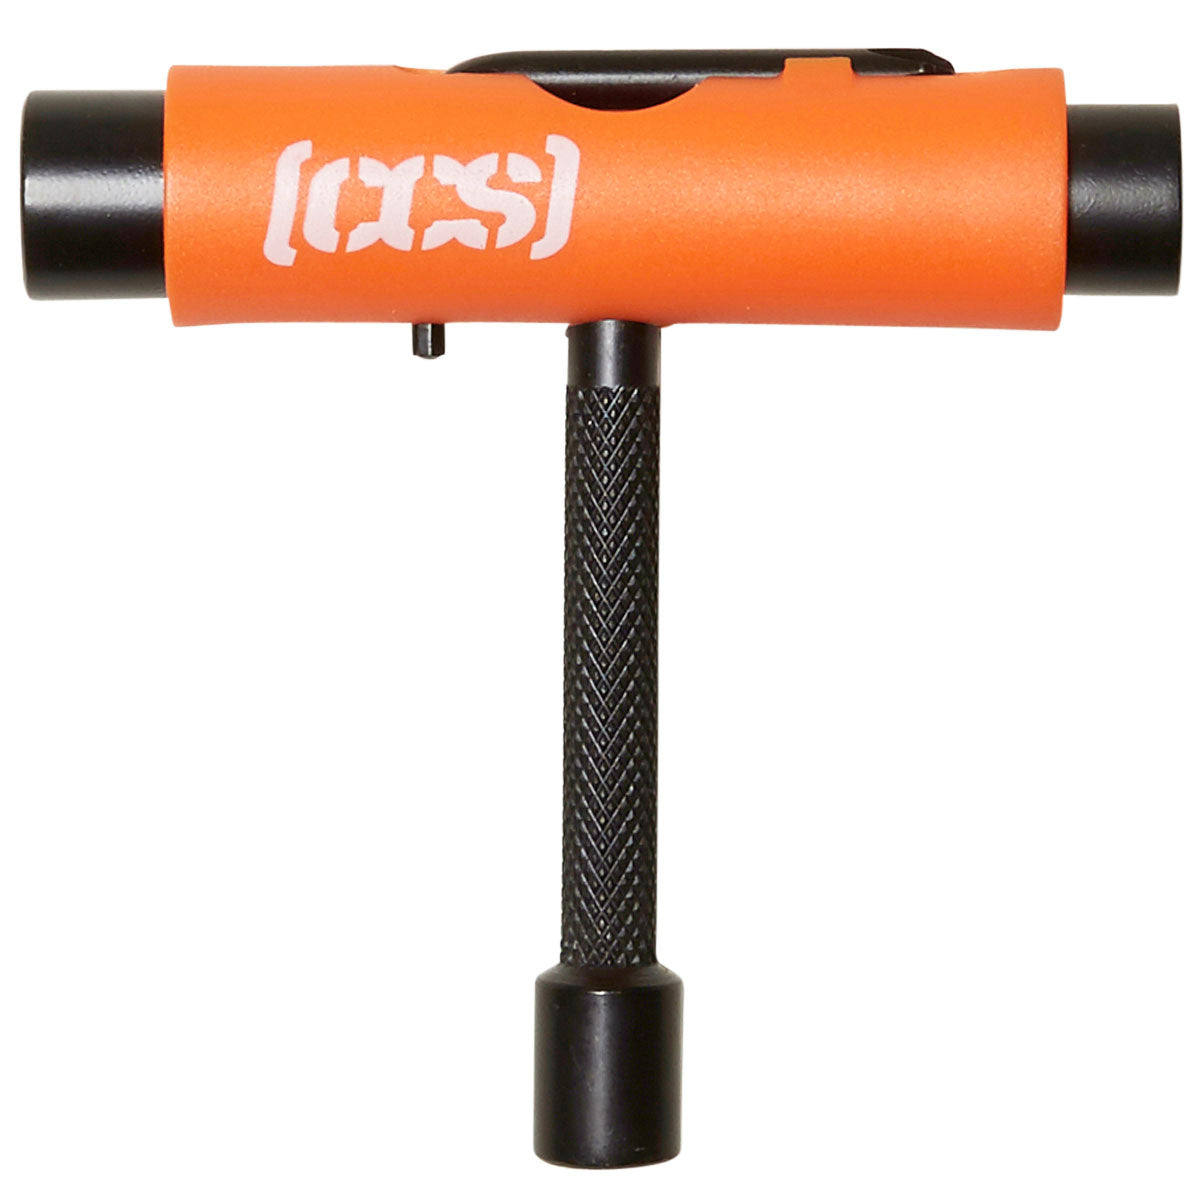 CCS Metal Skateboard Tool - Orange image 1